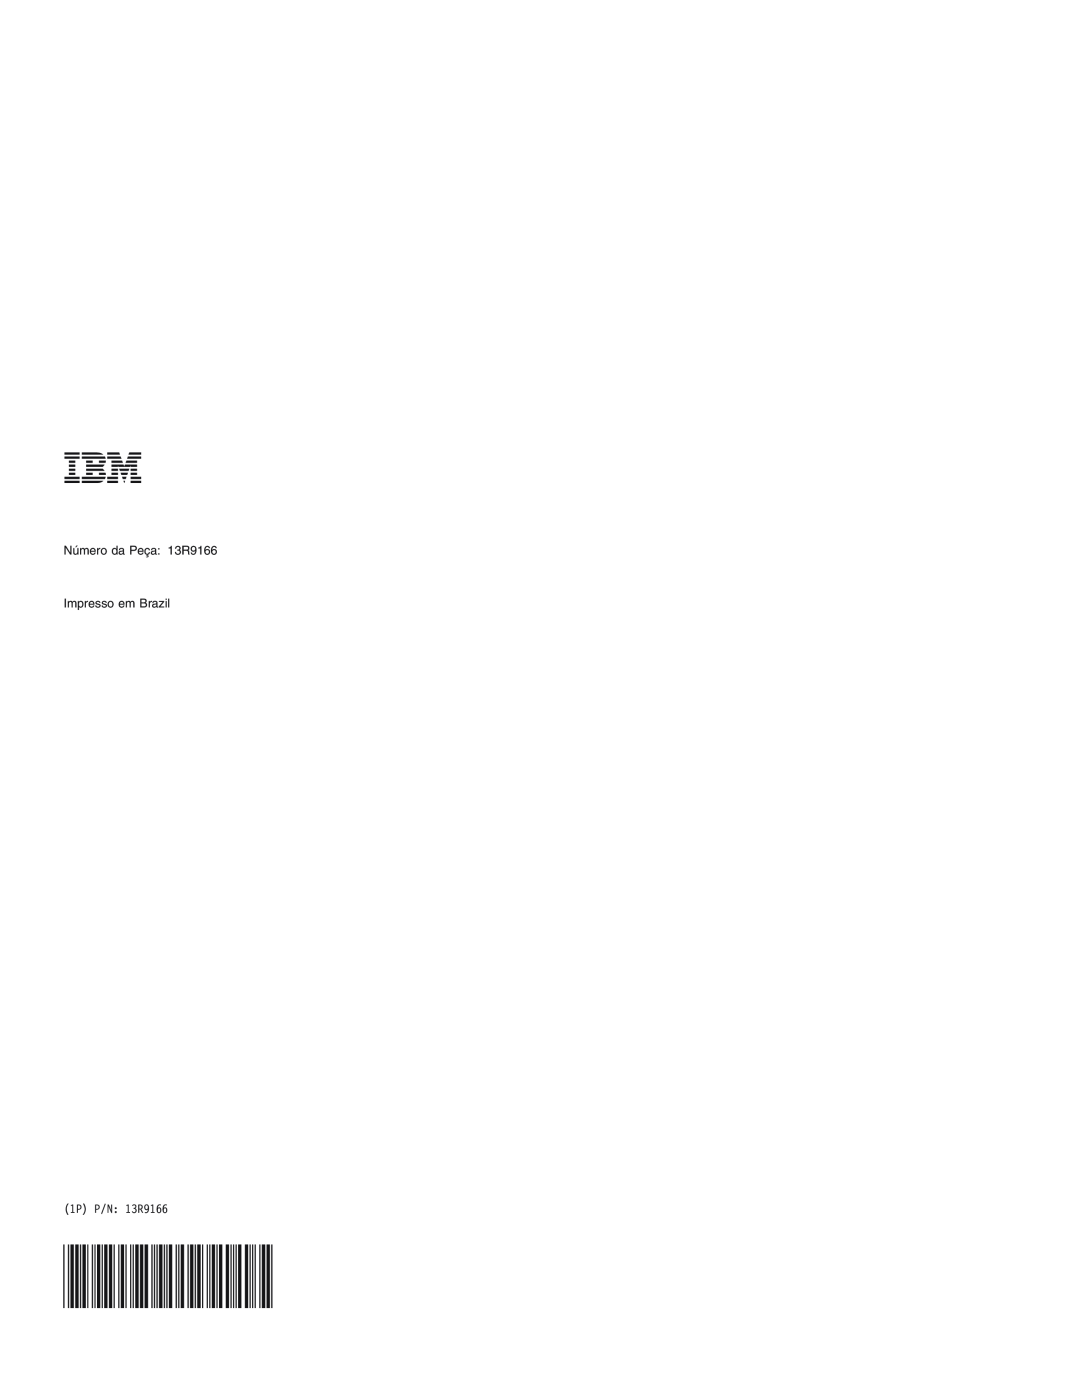 IBM Personal Computer manual Número da Peça 13R9166 Impresso em Brazil, 1P P/N 13R9166 